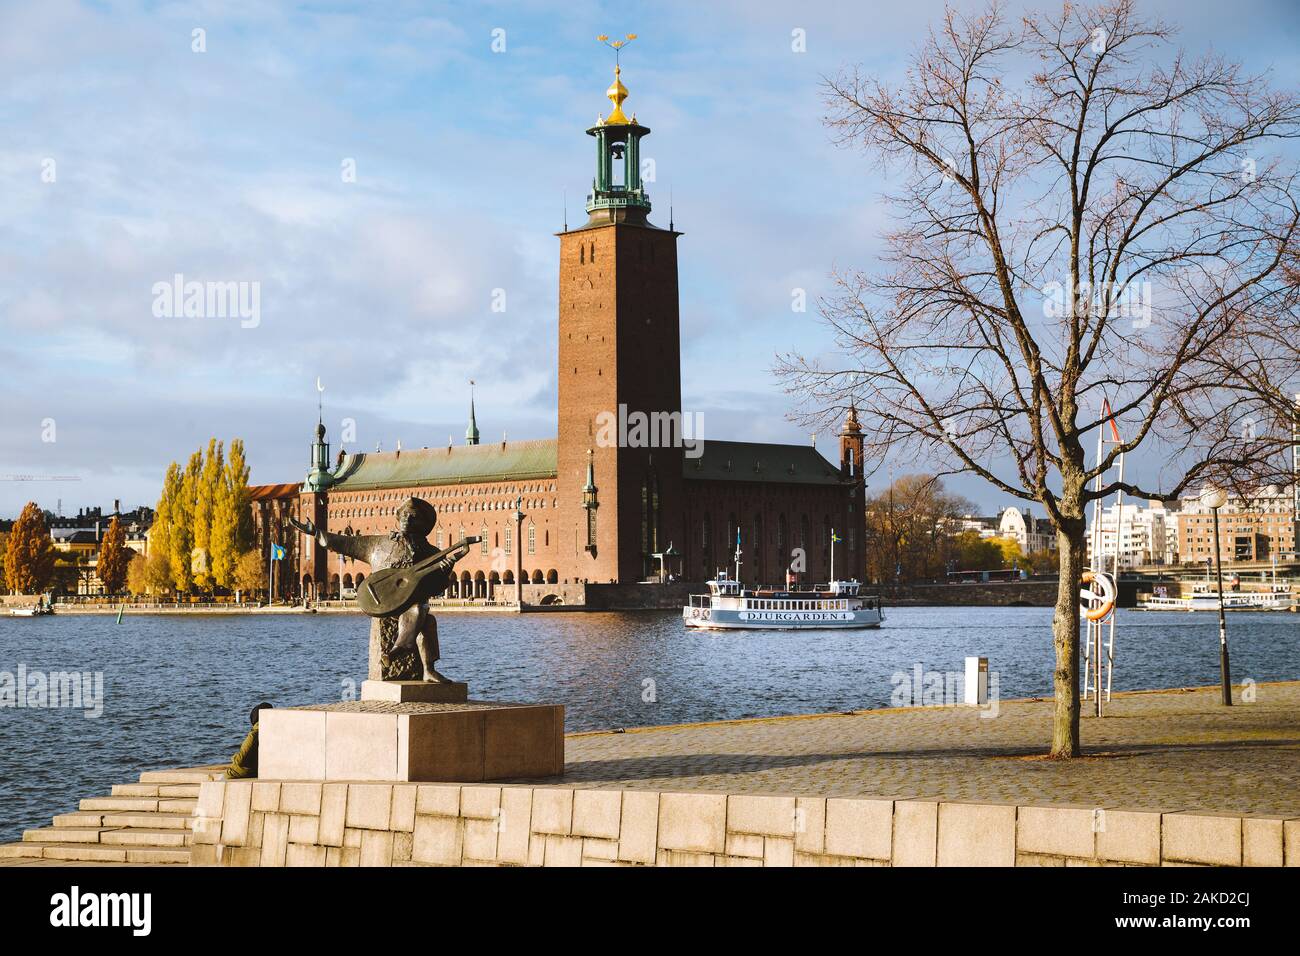 Vue panoramique du célèbre hôtel de ville de Stockholm avec Djurgarden ferry boat et Evert Taube statue, le centre de Stockholm, Suède, Scandinavie Banque D'Images